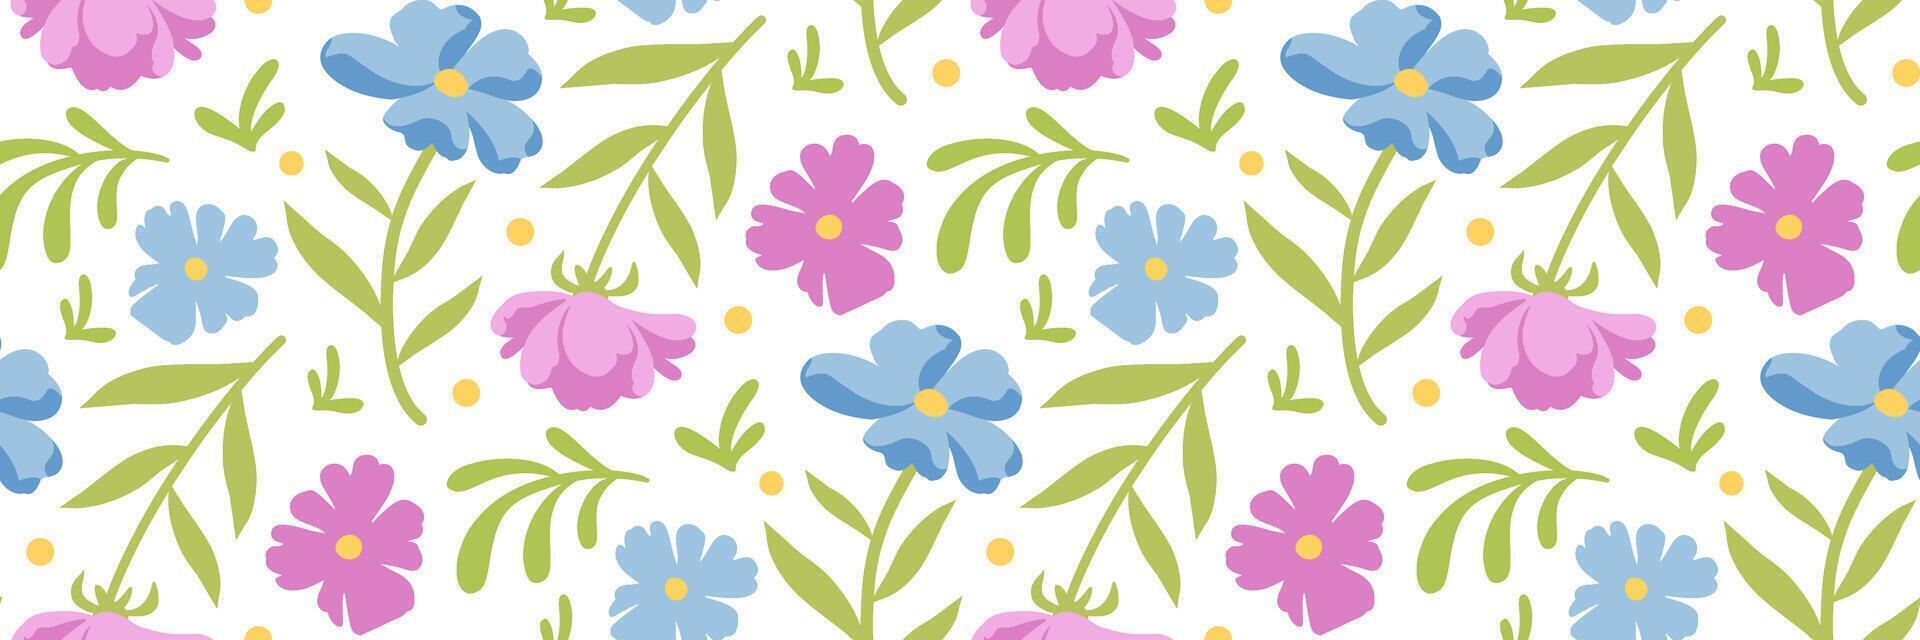 printemps fleurs modèle. floral imprimer. bleu et rose petit fleurs et feuilles. botanique Contexte pour invitation, mariages, textile, fonds d'écran, emballage papier, emballage. vecteur plat illustration.